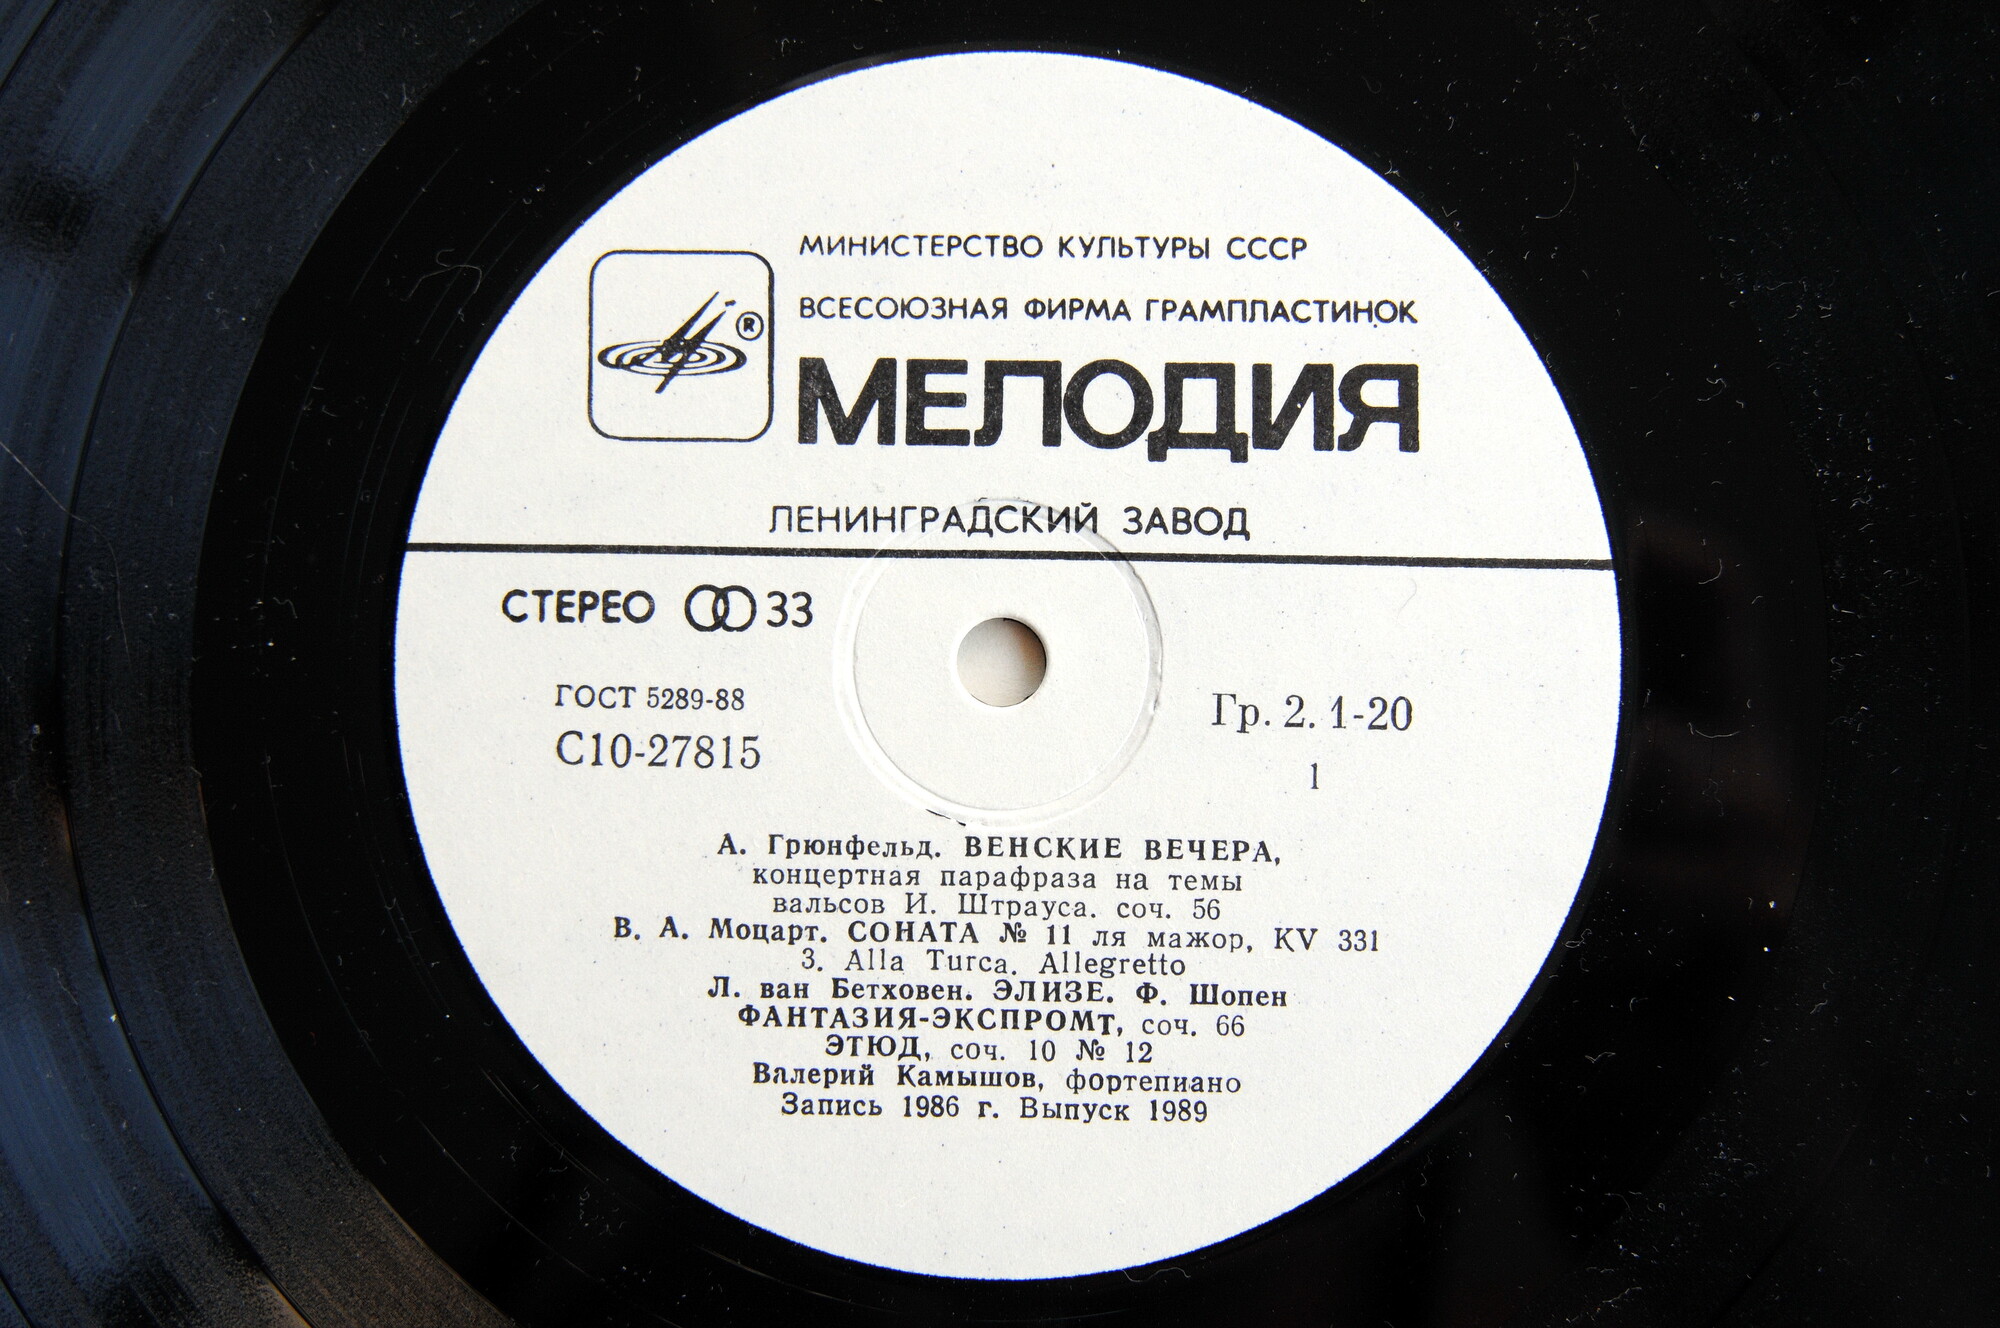 Валерий КАМЫШОВ, фортепиано. Популярные пьесы